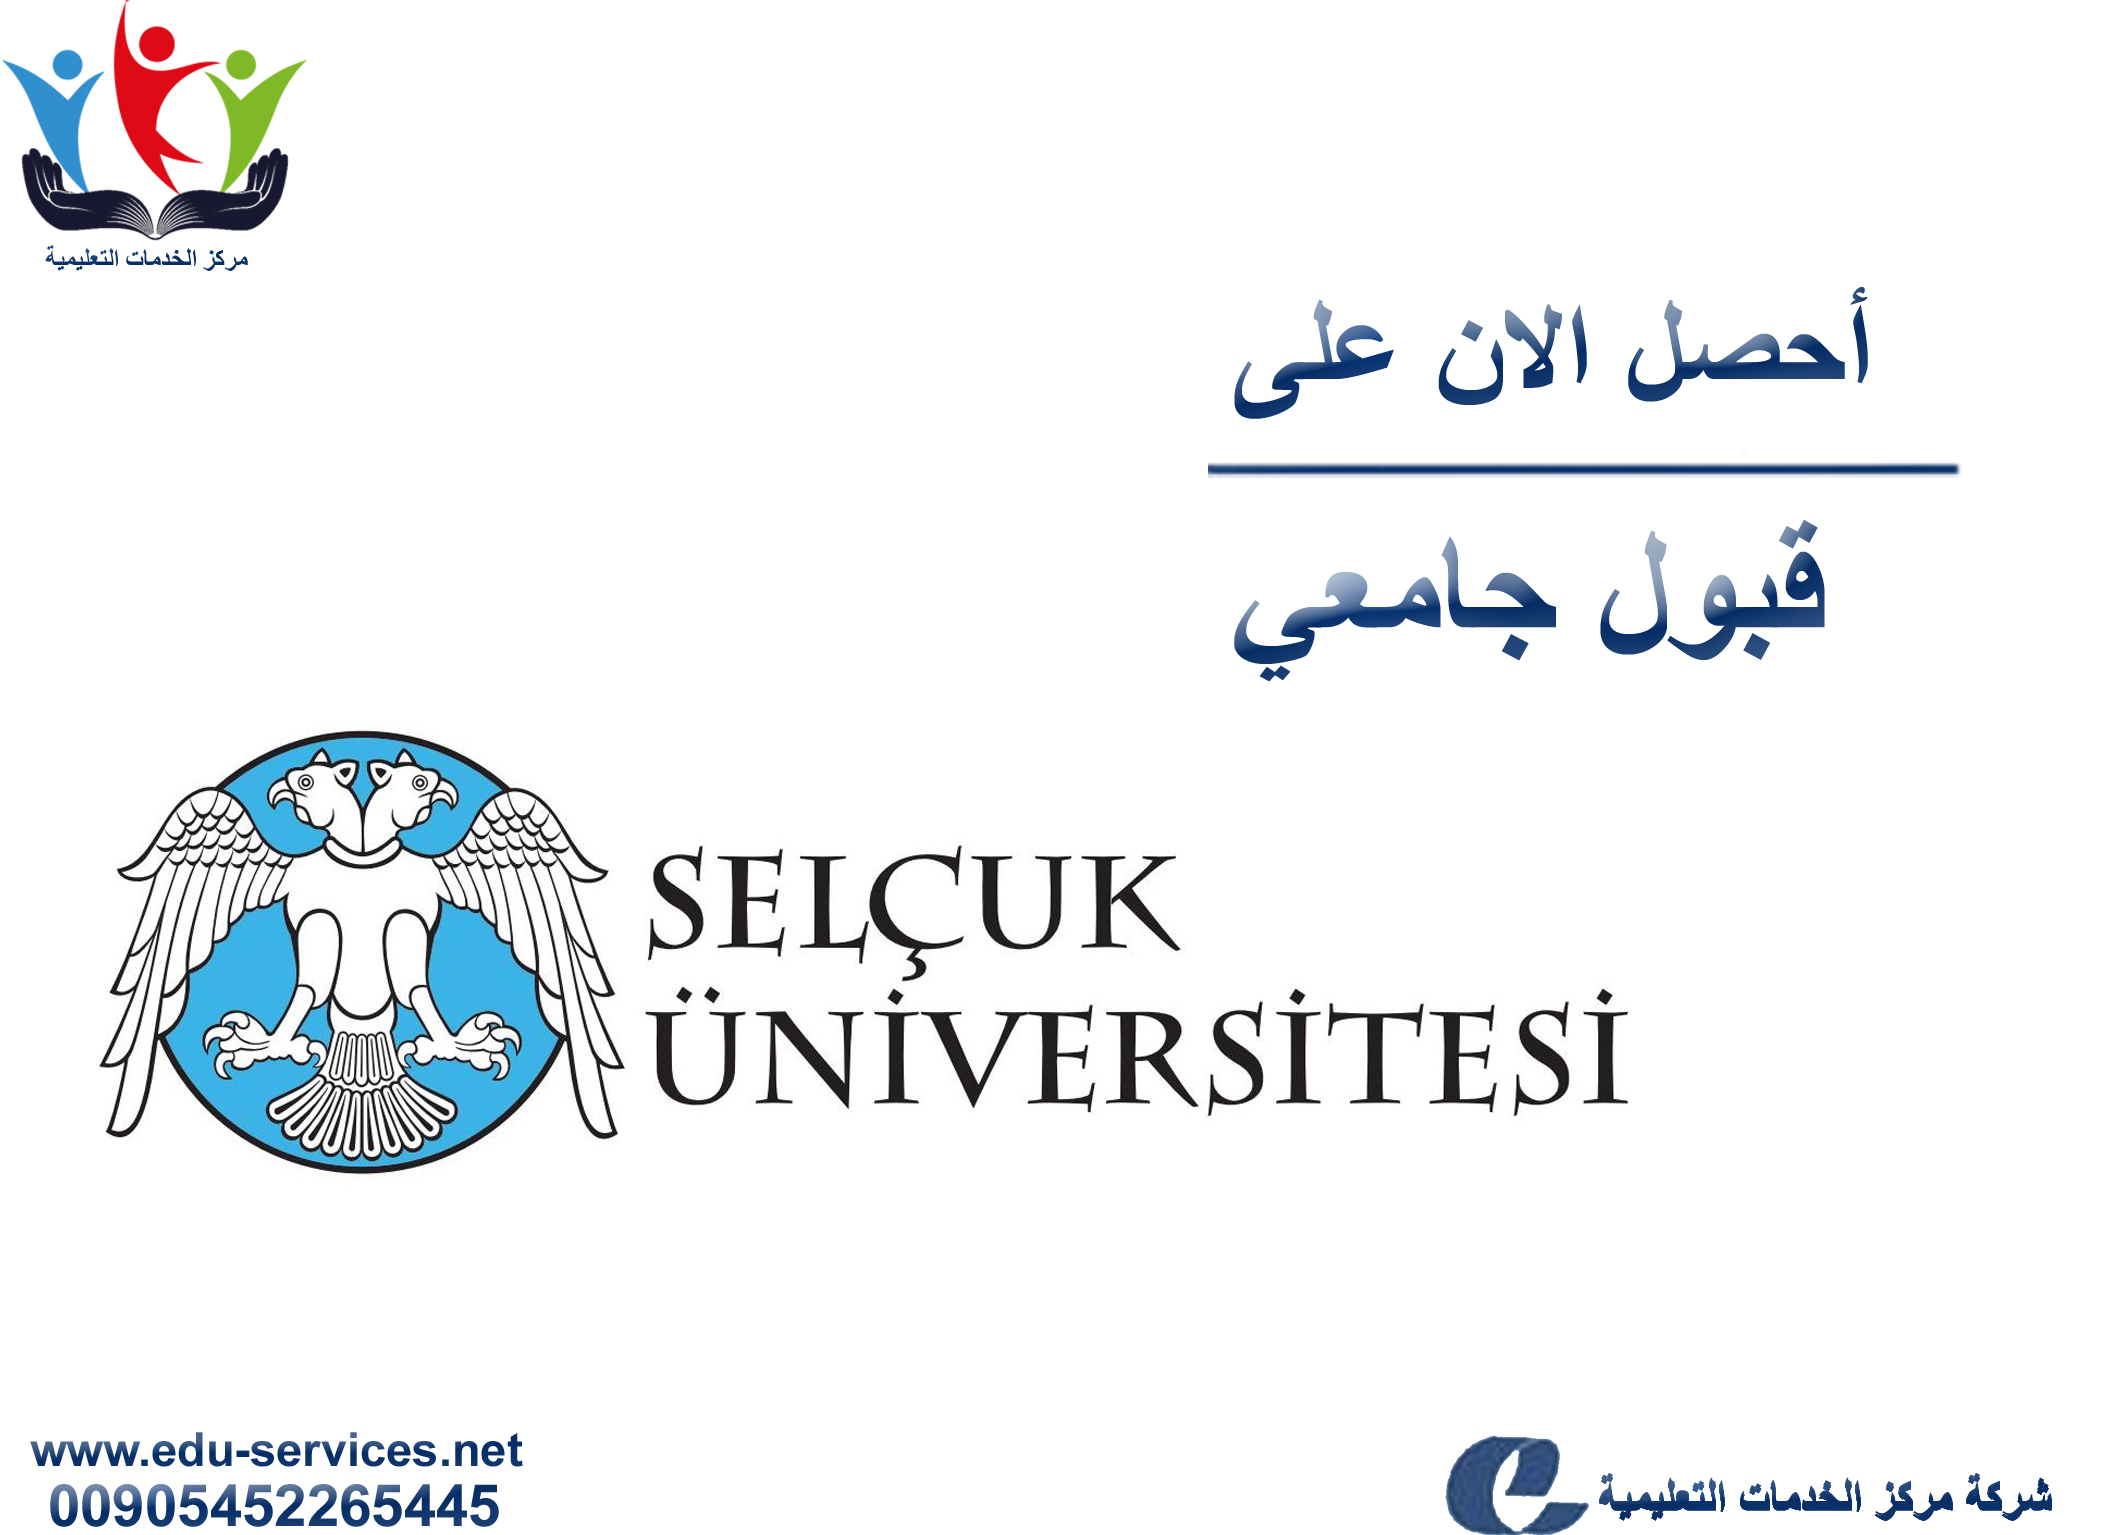 افتتاح التسجيل في جامعة سلجوق للعام 2018-2019